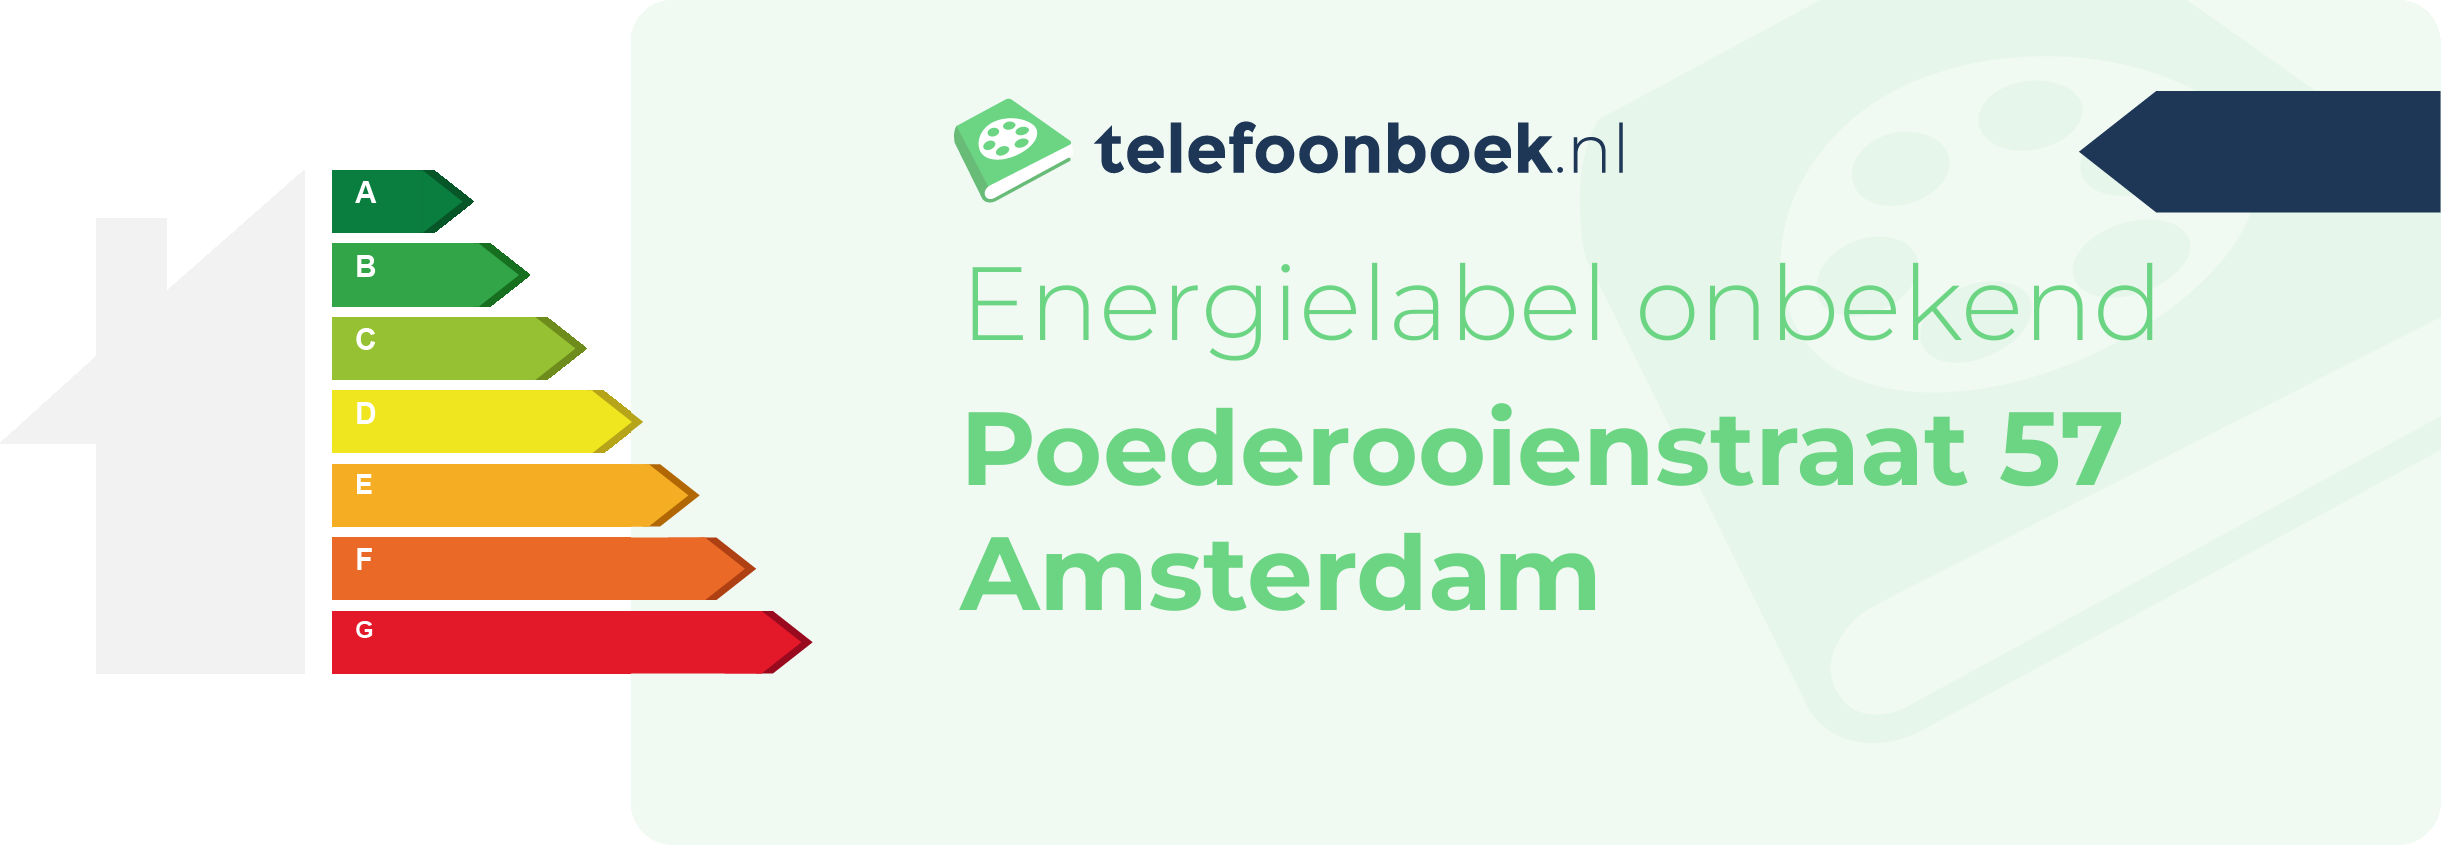 Energielabel Poederooienstraat 57 Amsterdam